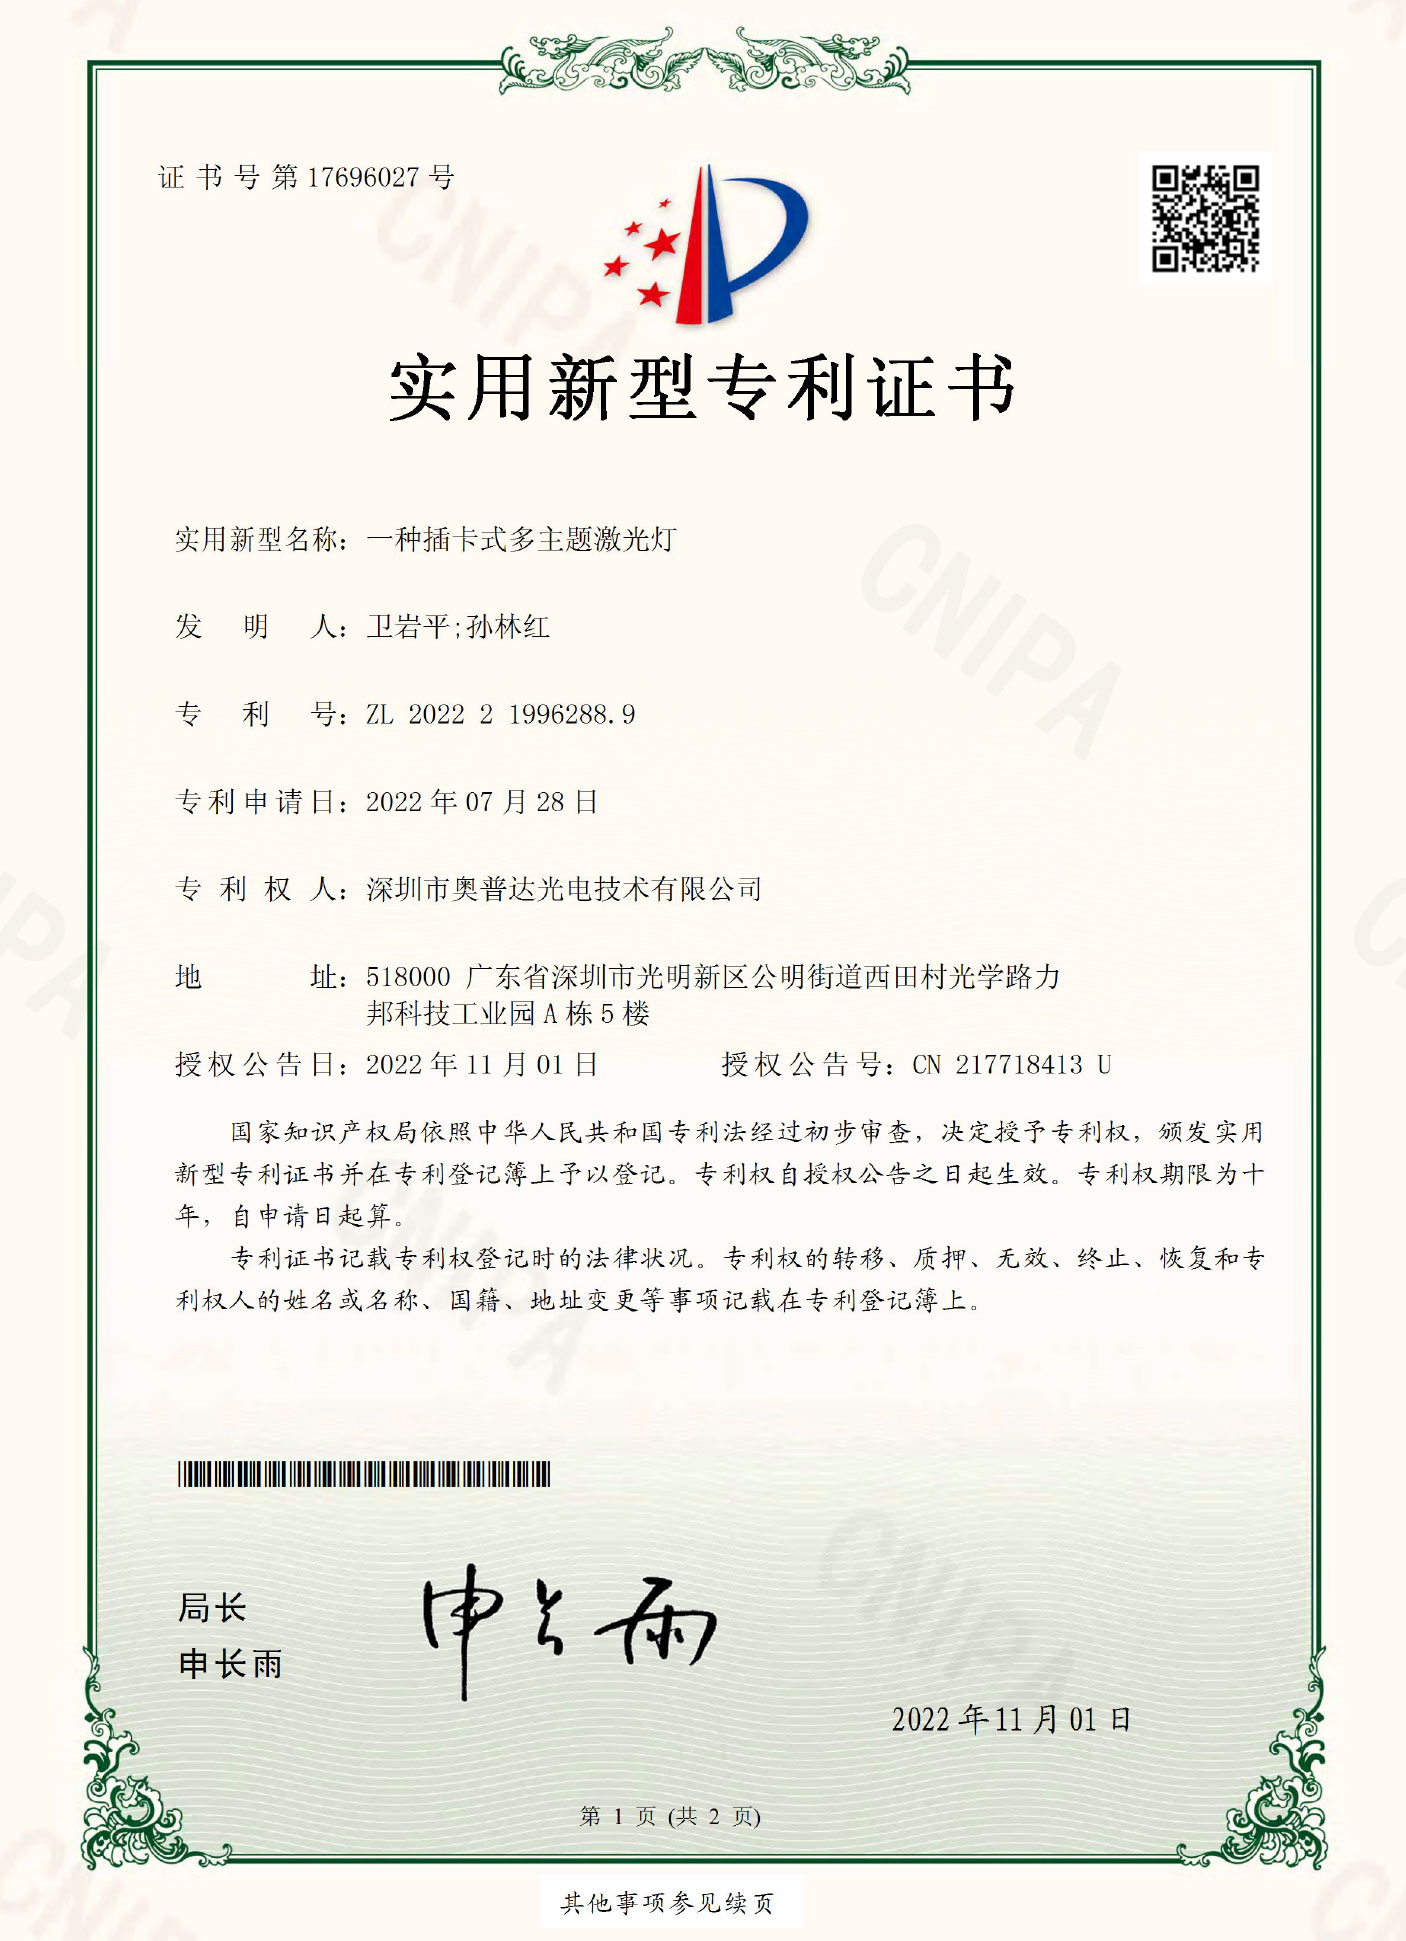 深圳市奥普达光电技术有限公司-2022219962889-实用新型专利证书(签章)